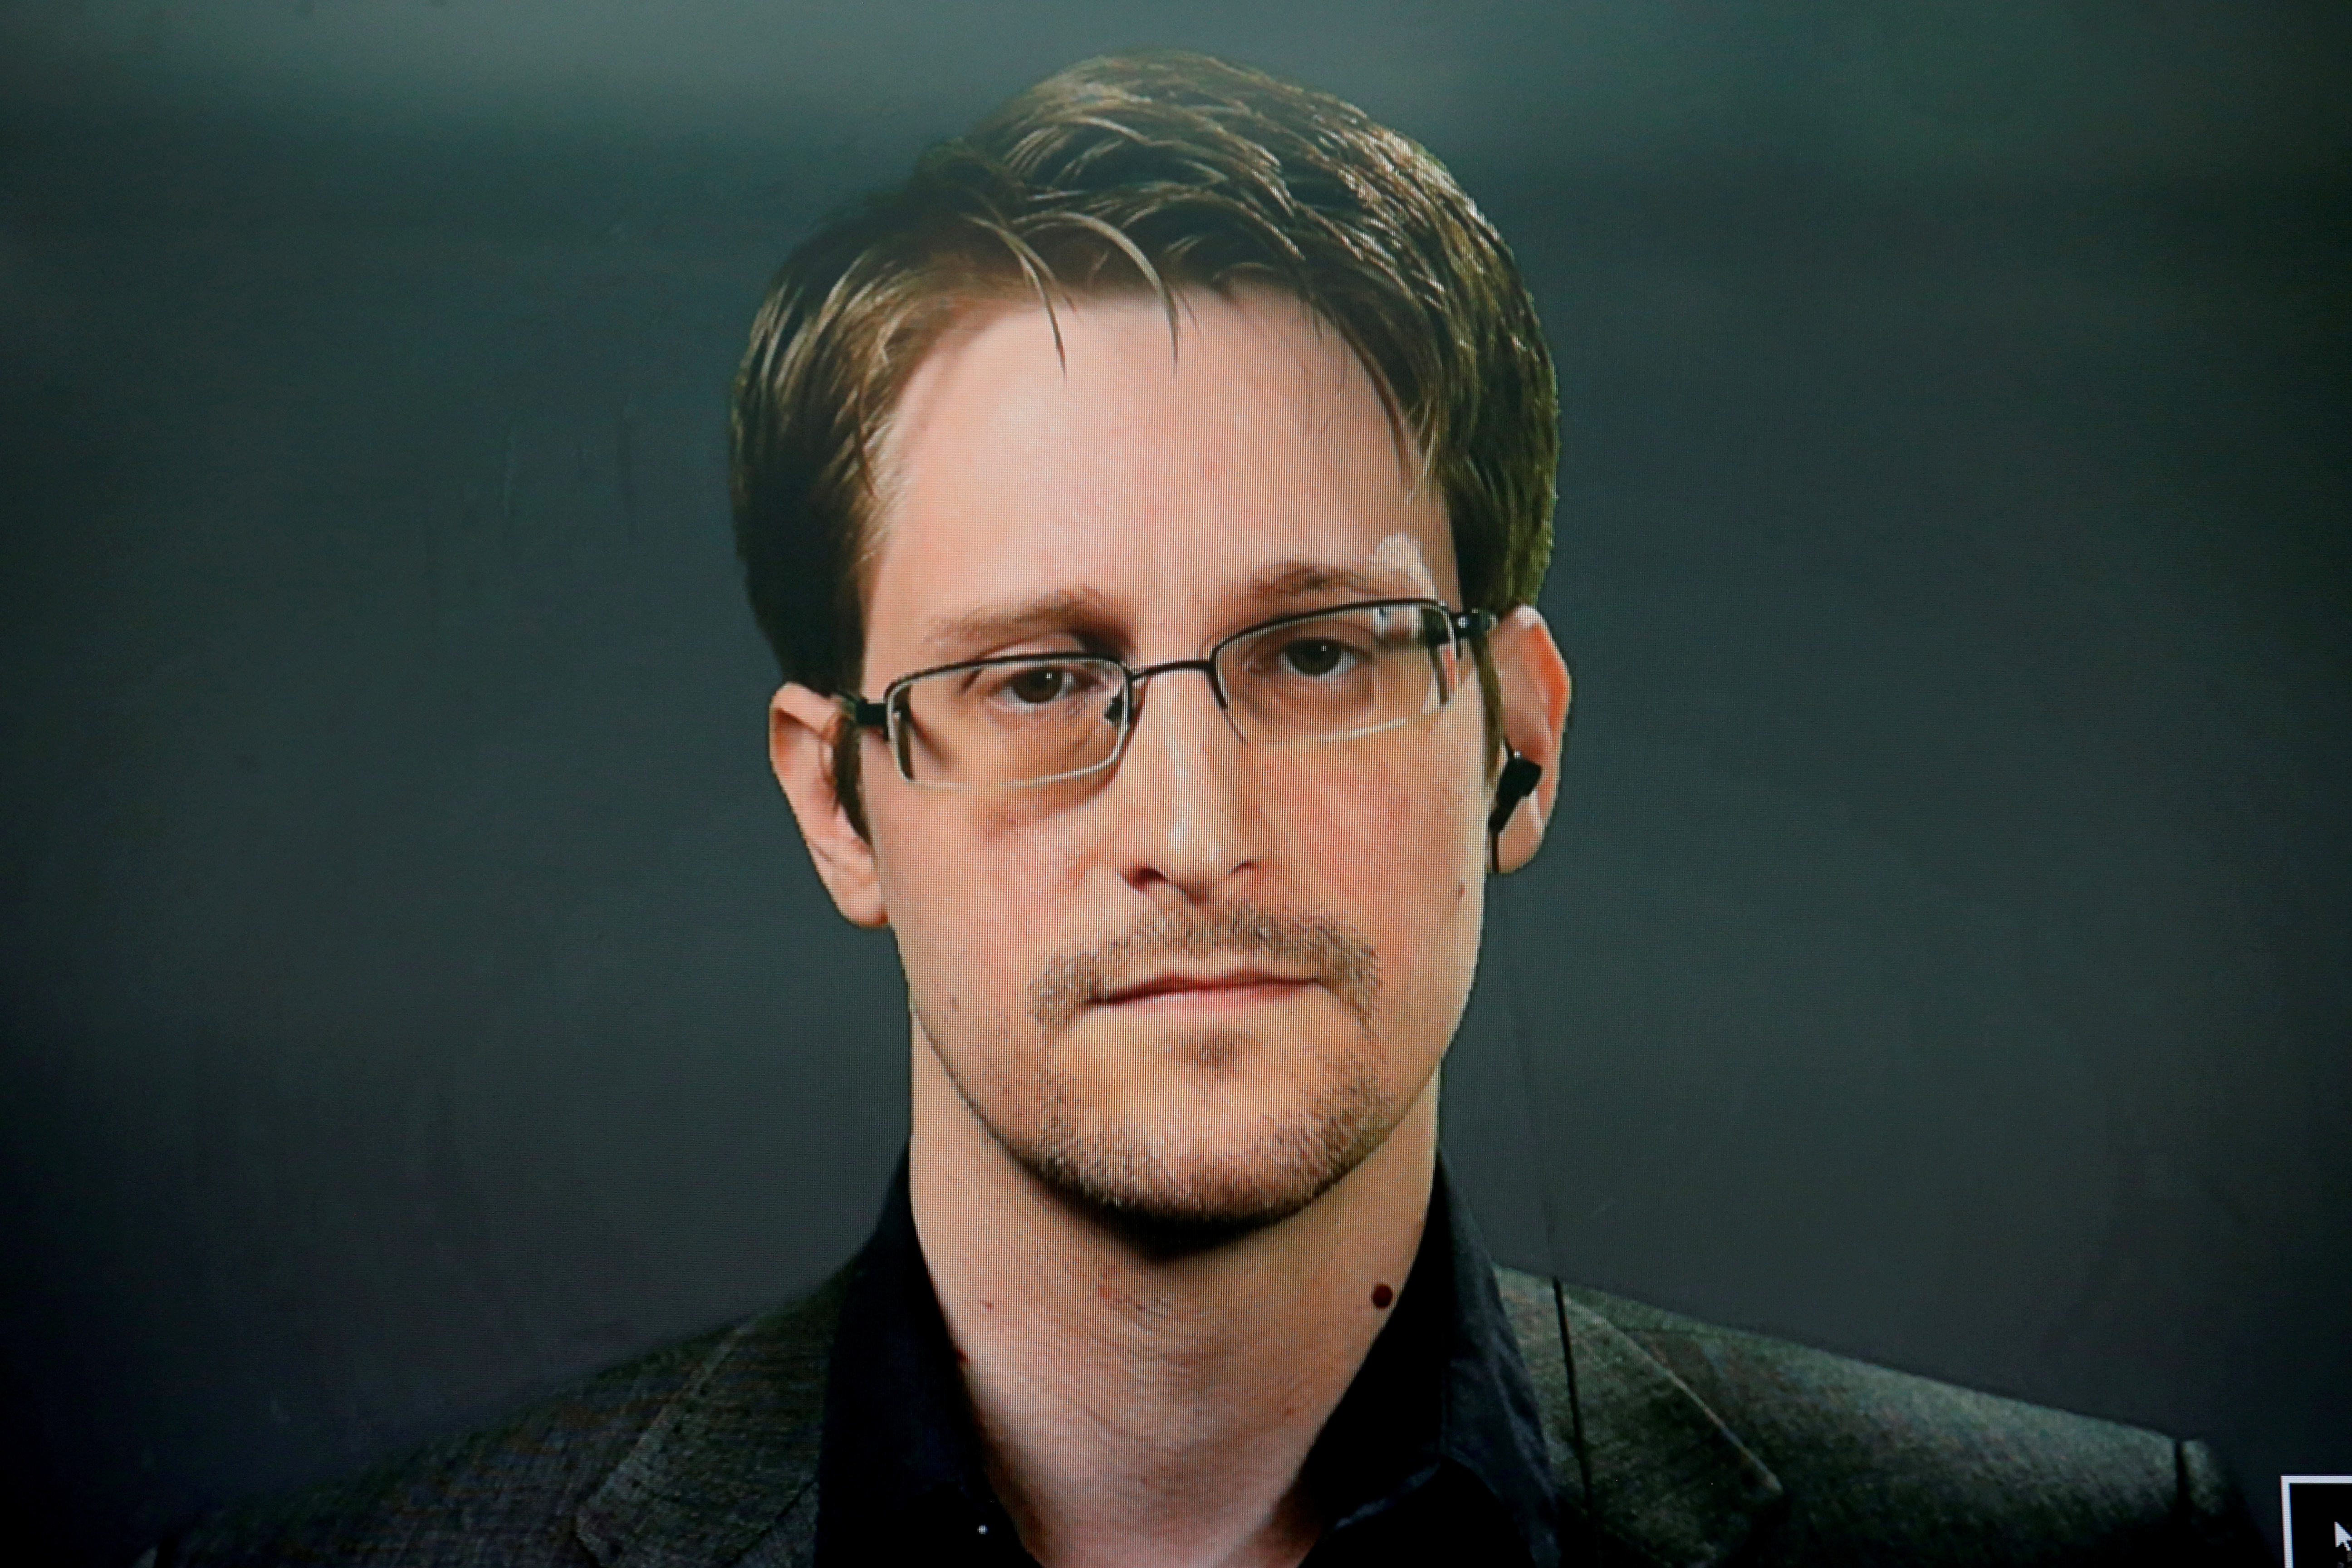 Vladimir Putin le otorgó la ciudadanía rusa a Edward Snowden, el hombre que filtró secretos de seguridad de EEUU